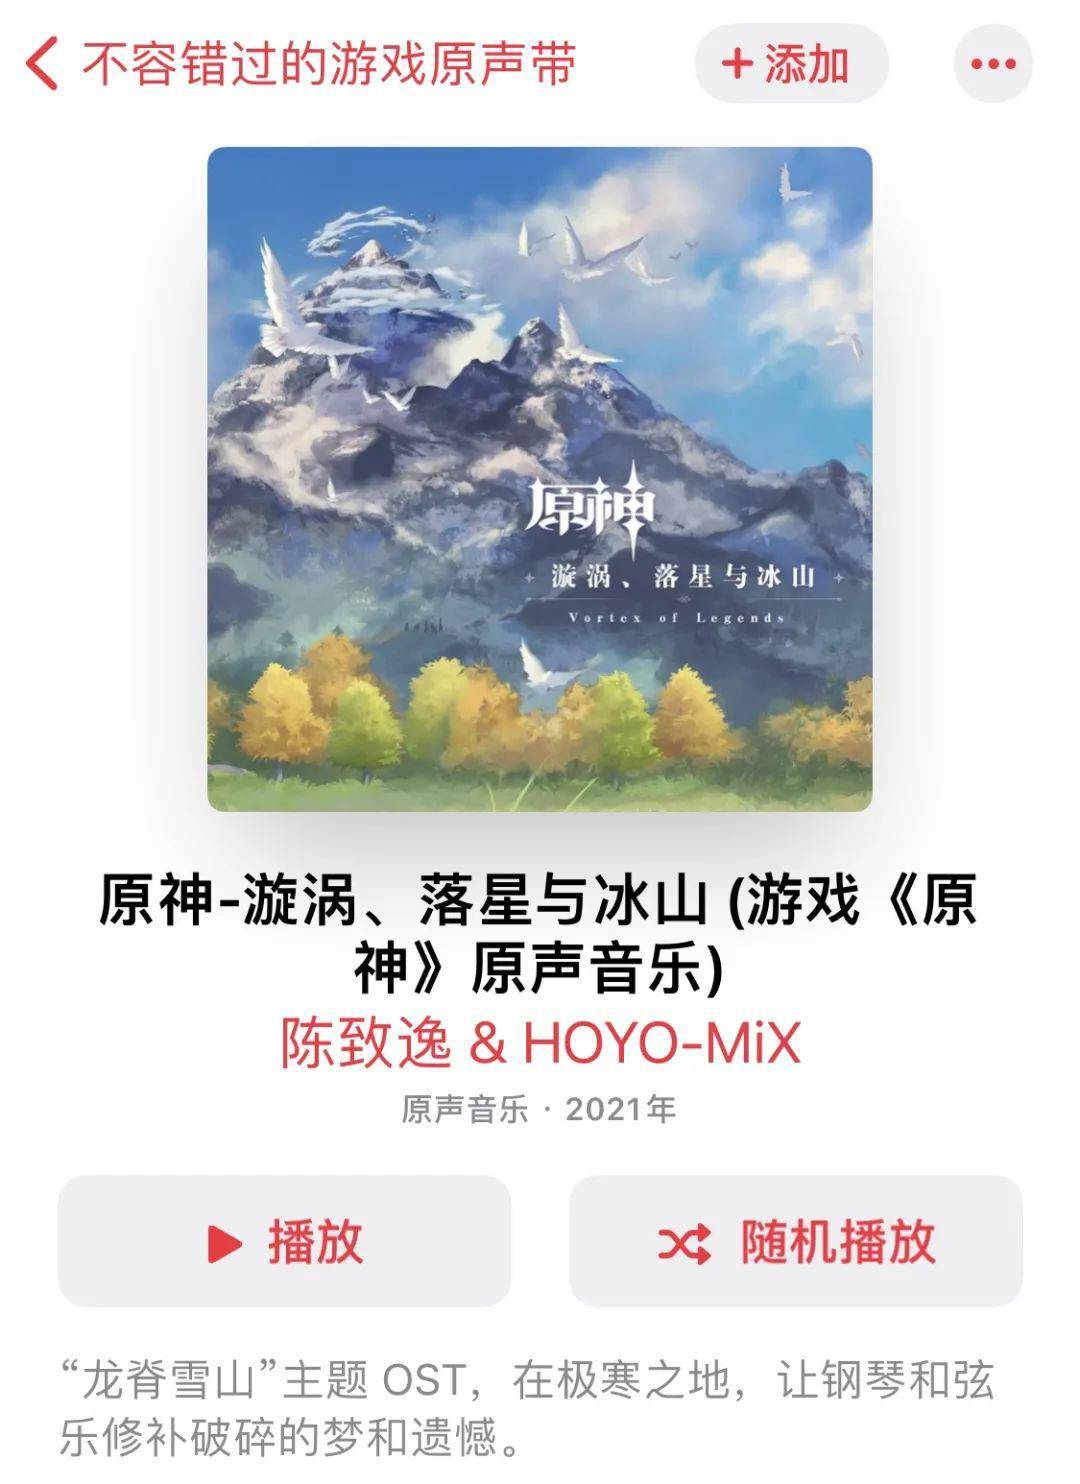 苹果音乐排行榜_“音乐公司”米哈游:《原神》音乐获得苹果AppleMusic推荐